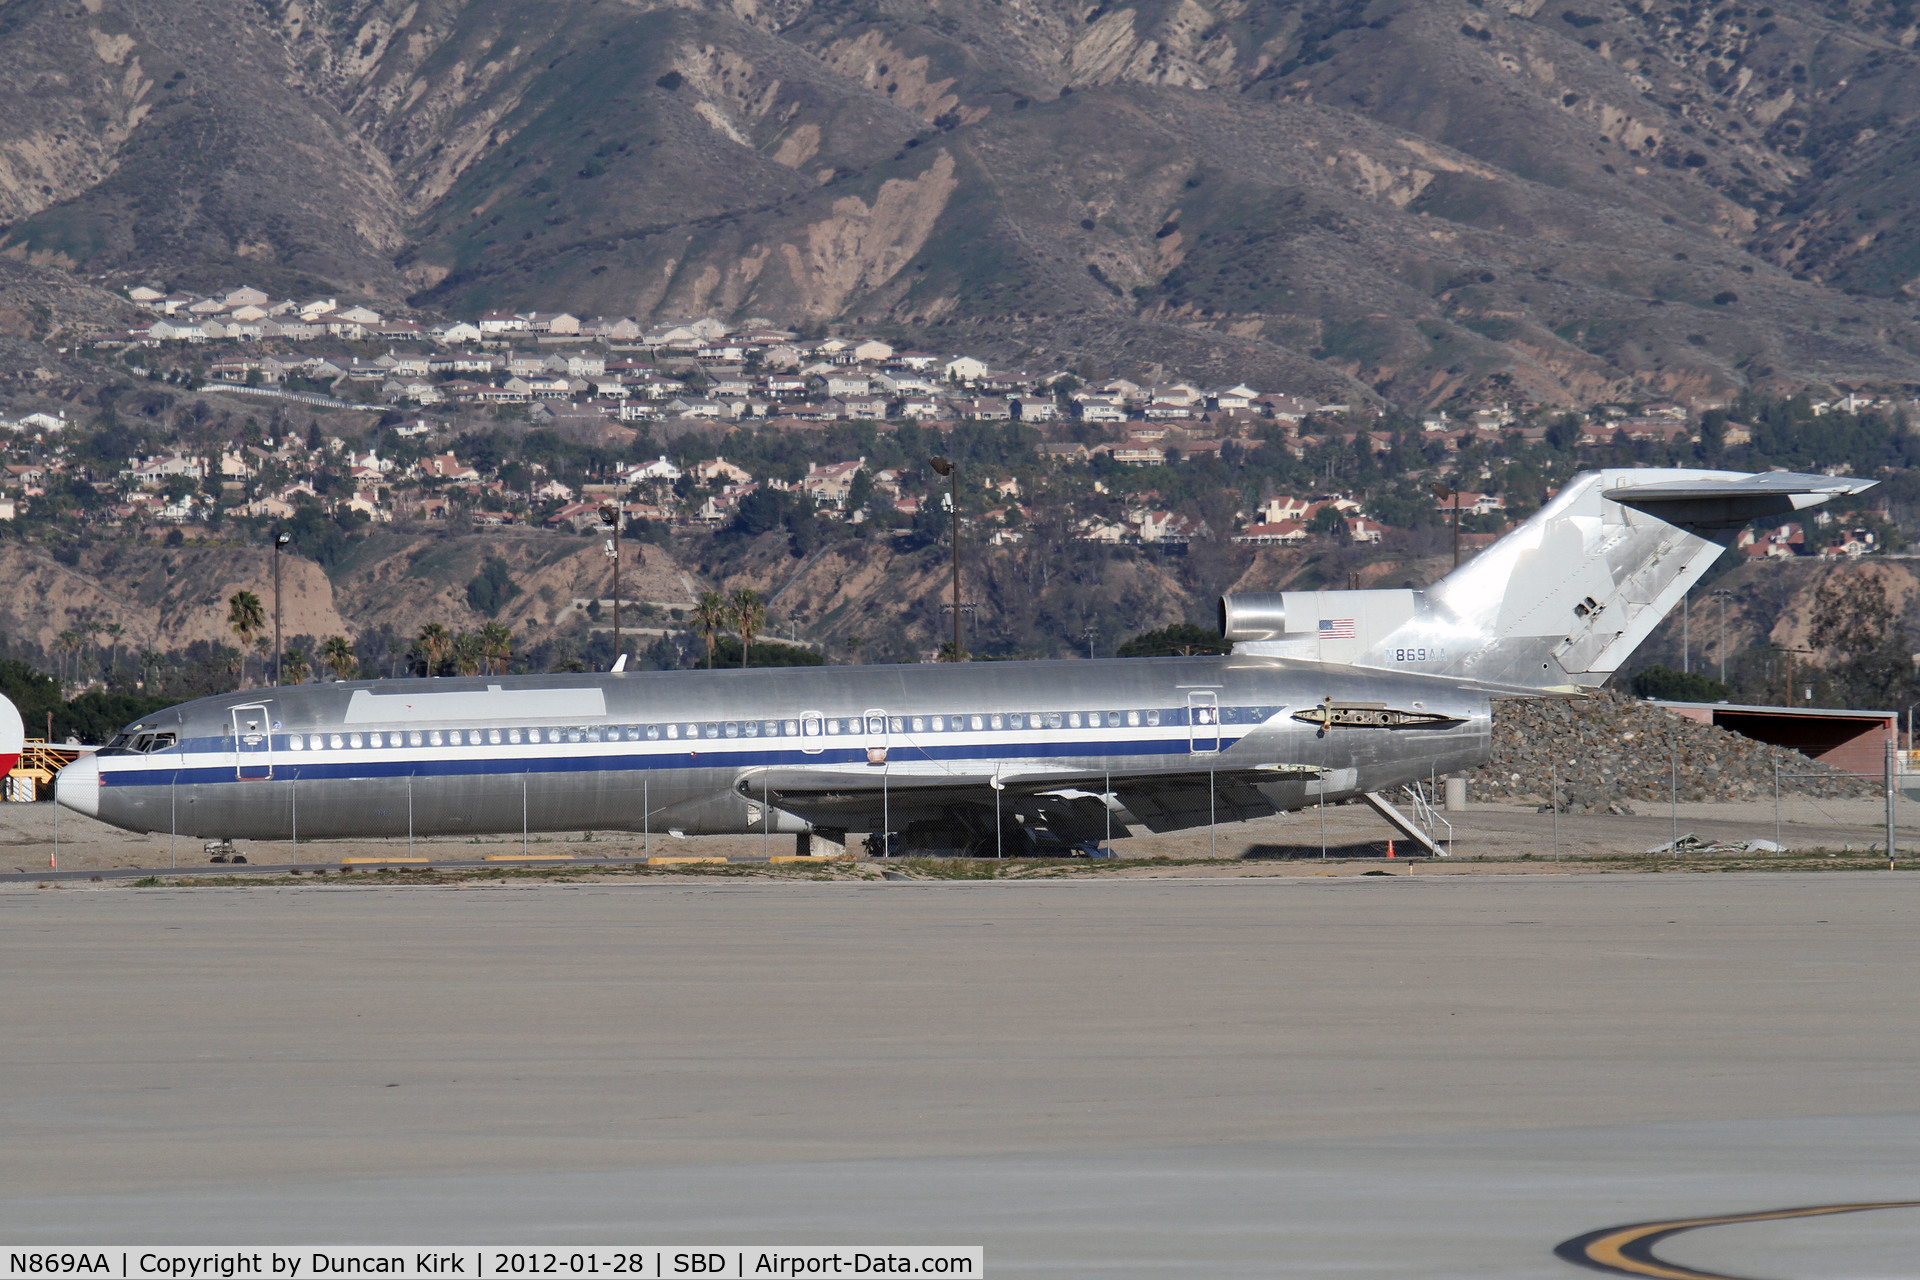 N869AA, 1977 Boeing 727-223 C/N 21374, Stored or being dismantled at San Bernardino